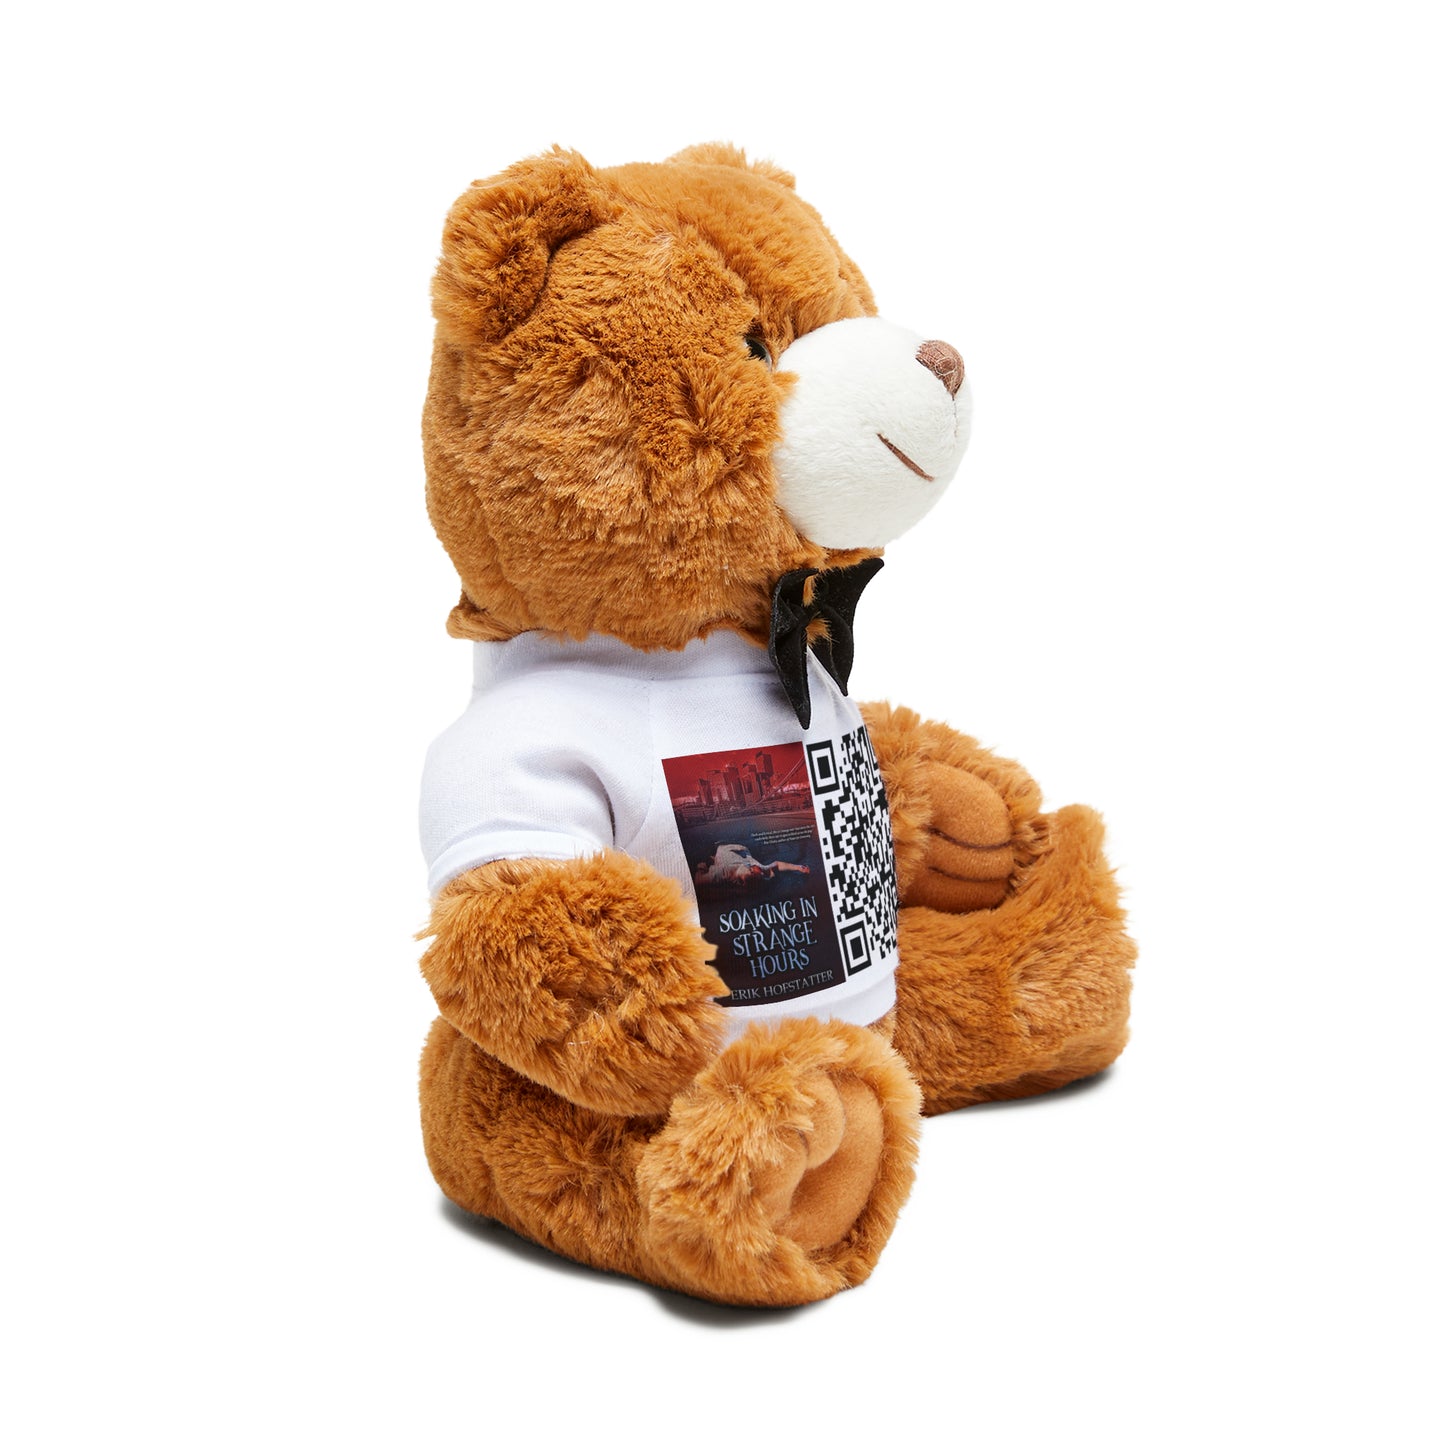 Soaking in Strange Hours - Teddy Bear